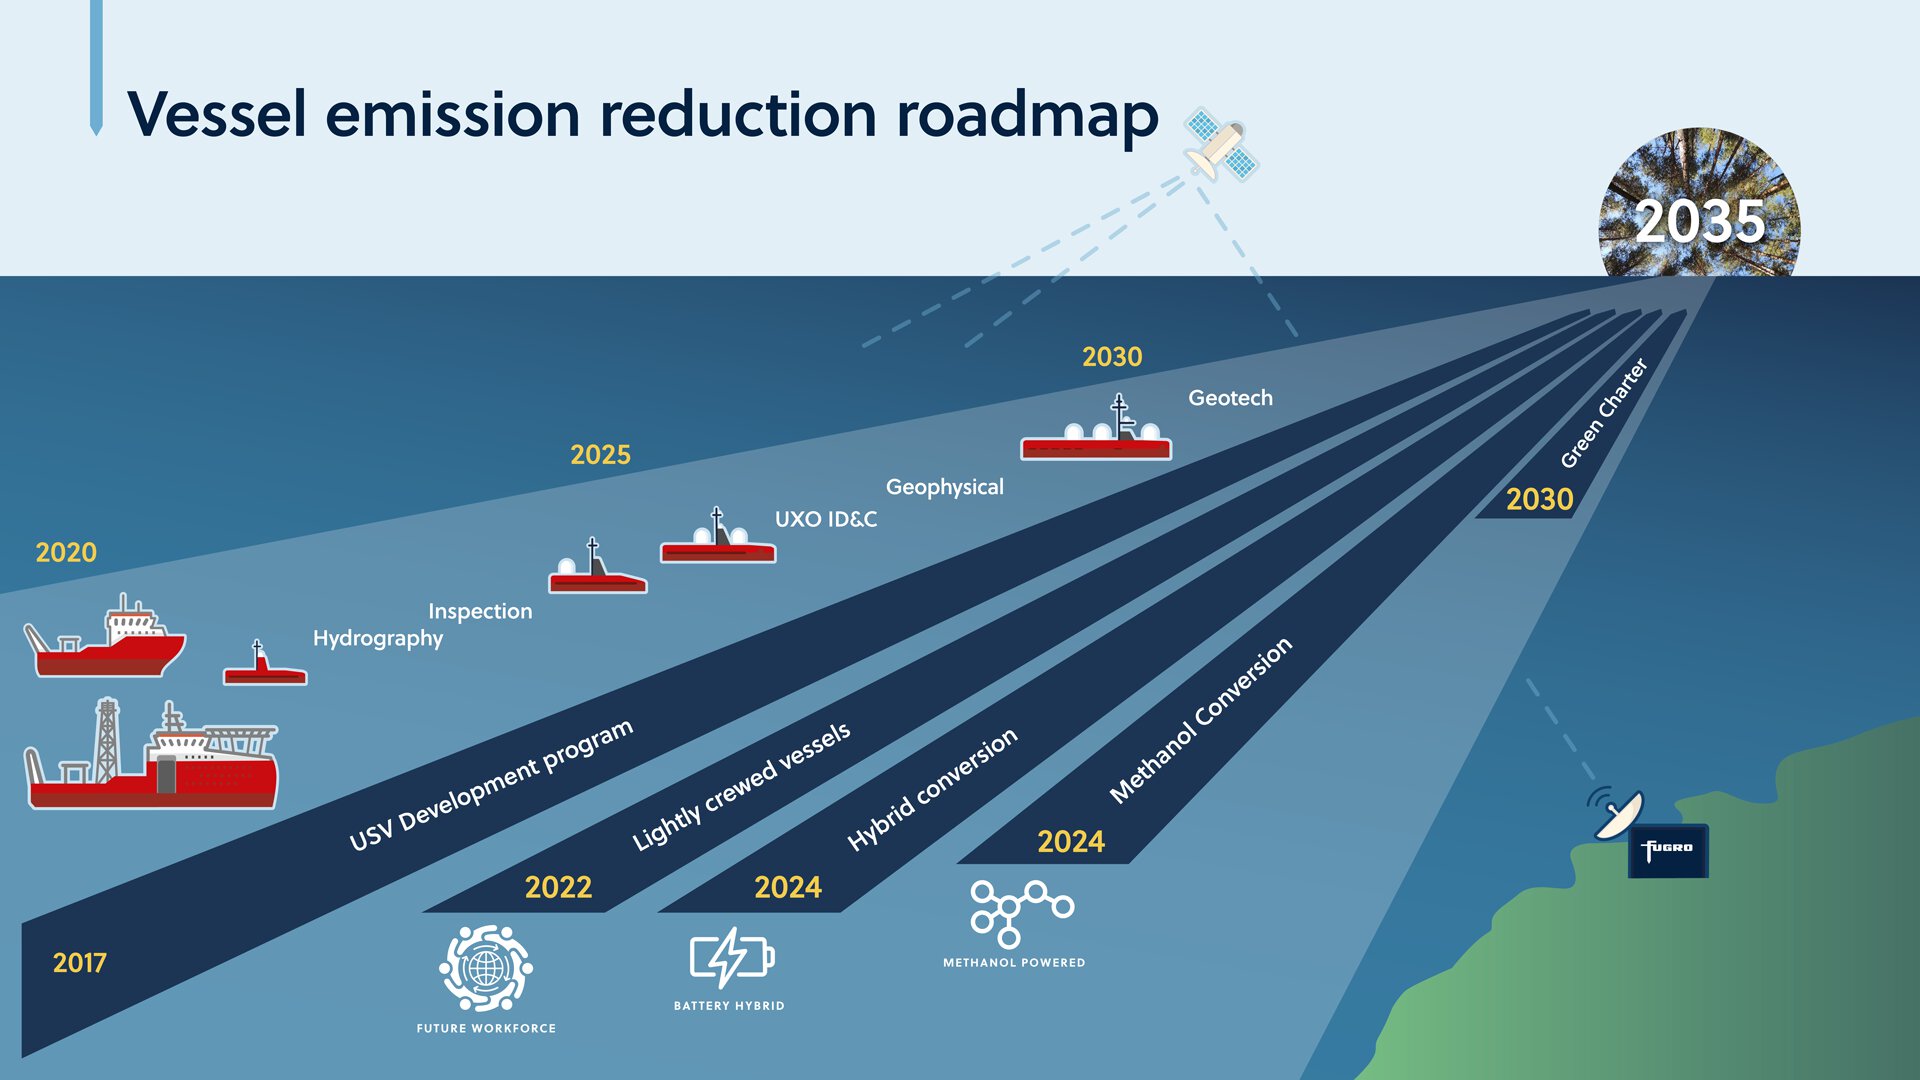 Fugro's roadmap towards net zero 2035